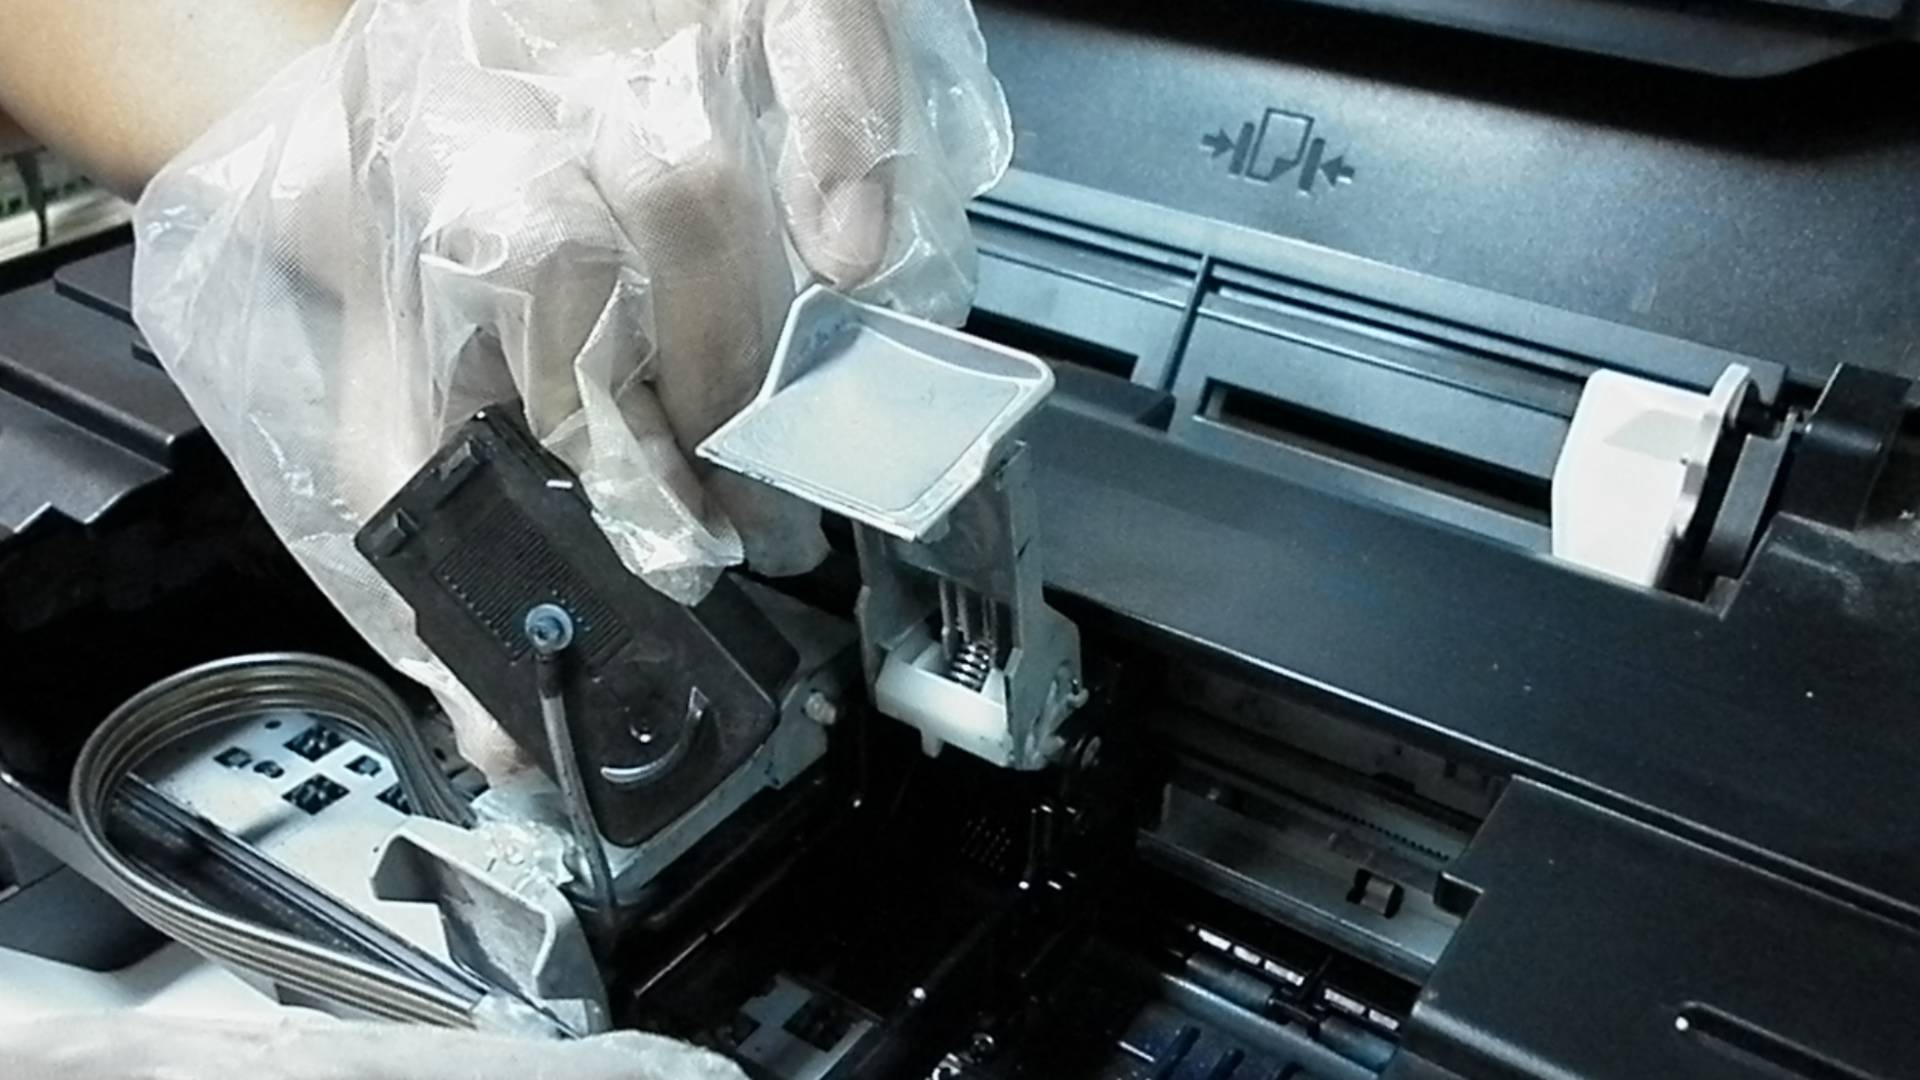 Je bekijkt nu Hoe reinig je een Epson printer?